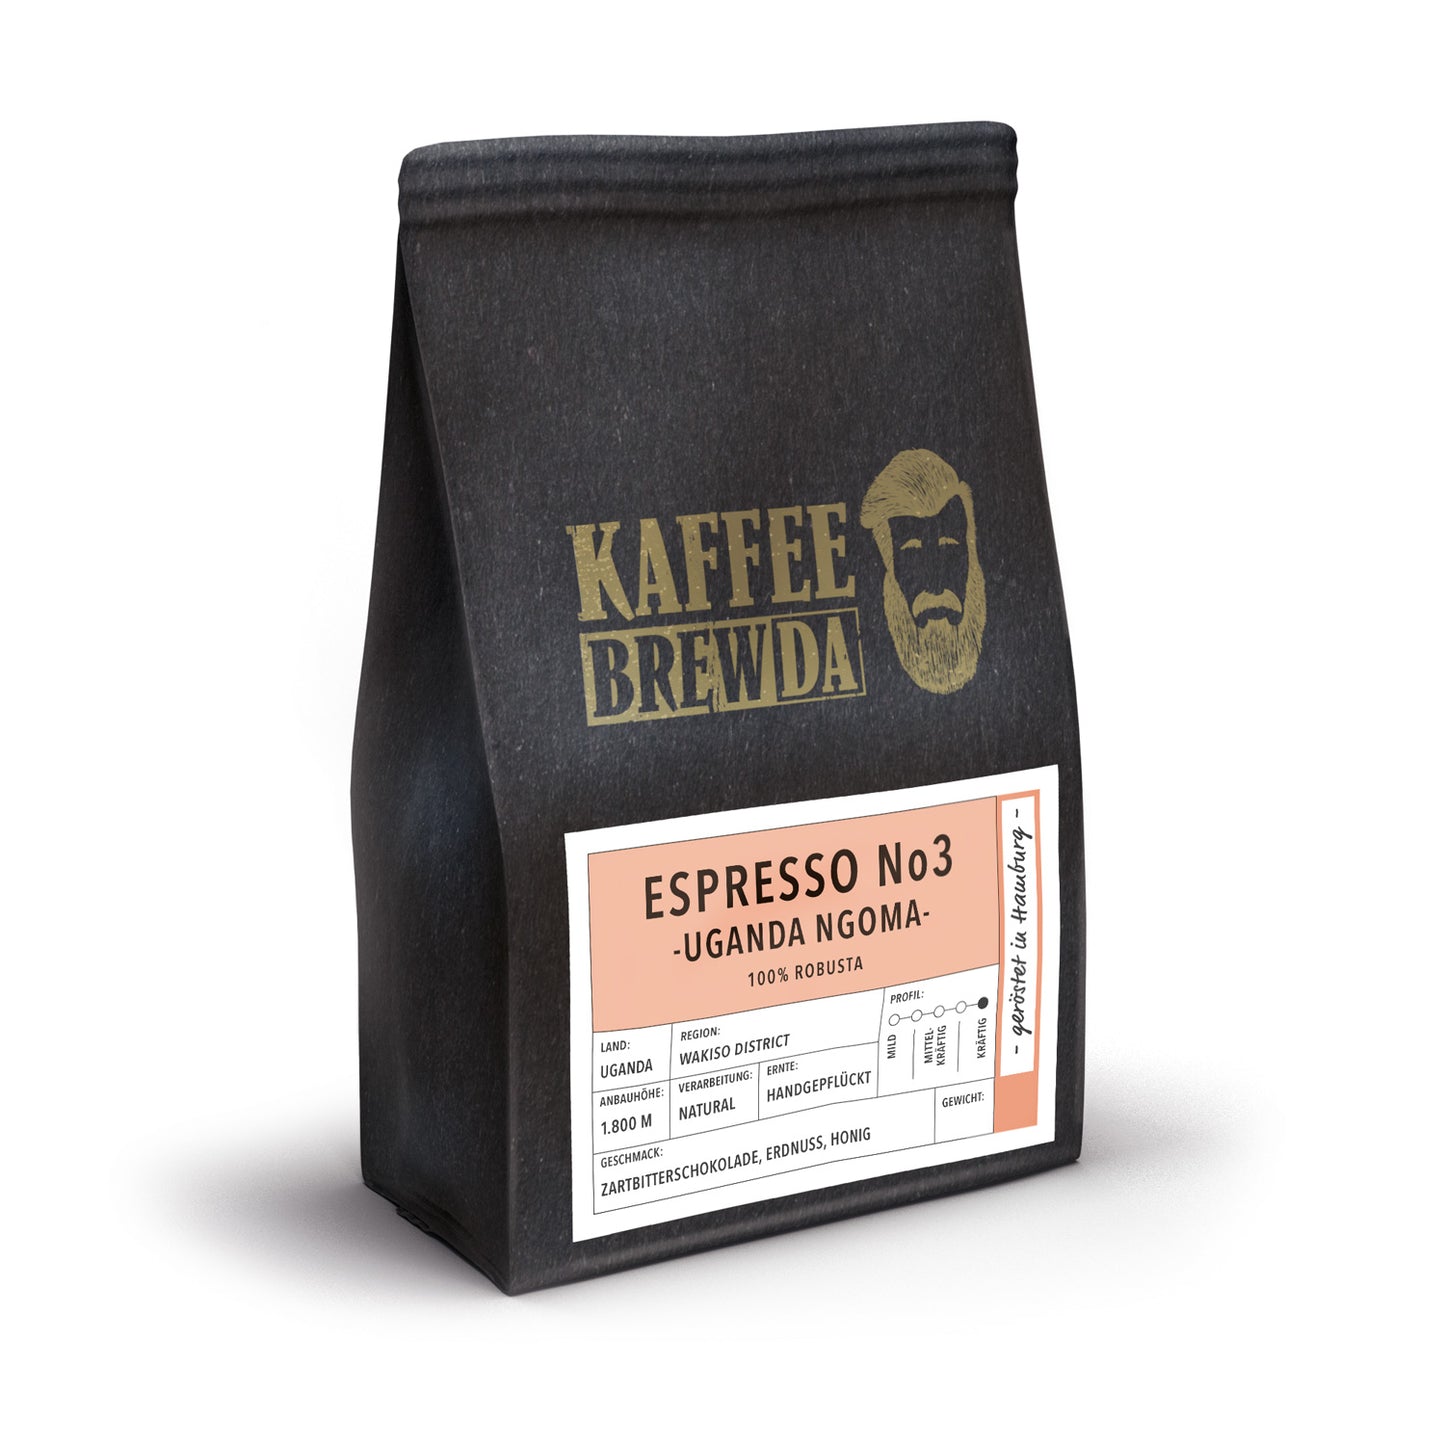 kaffeebrewda-espresso-no3-uganda-ngoma